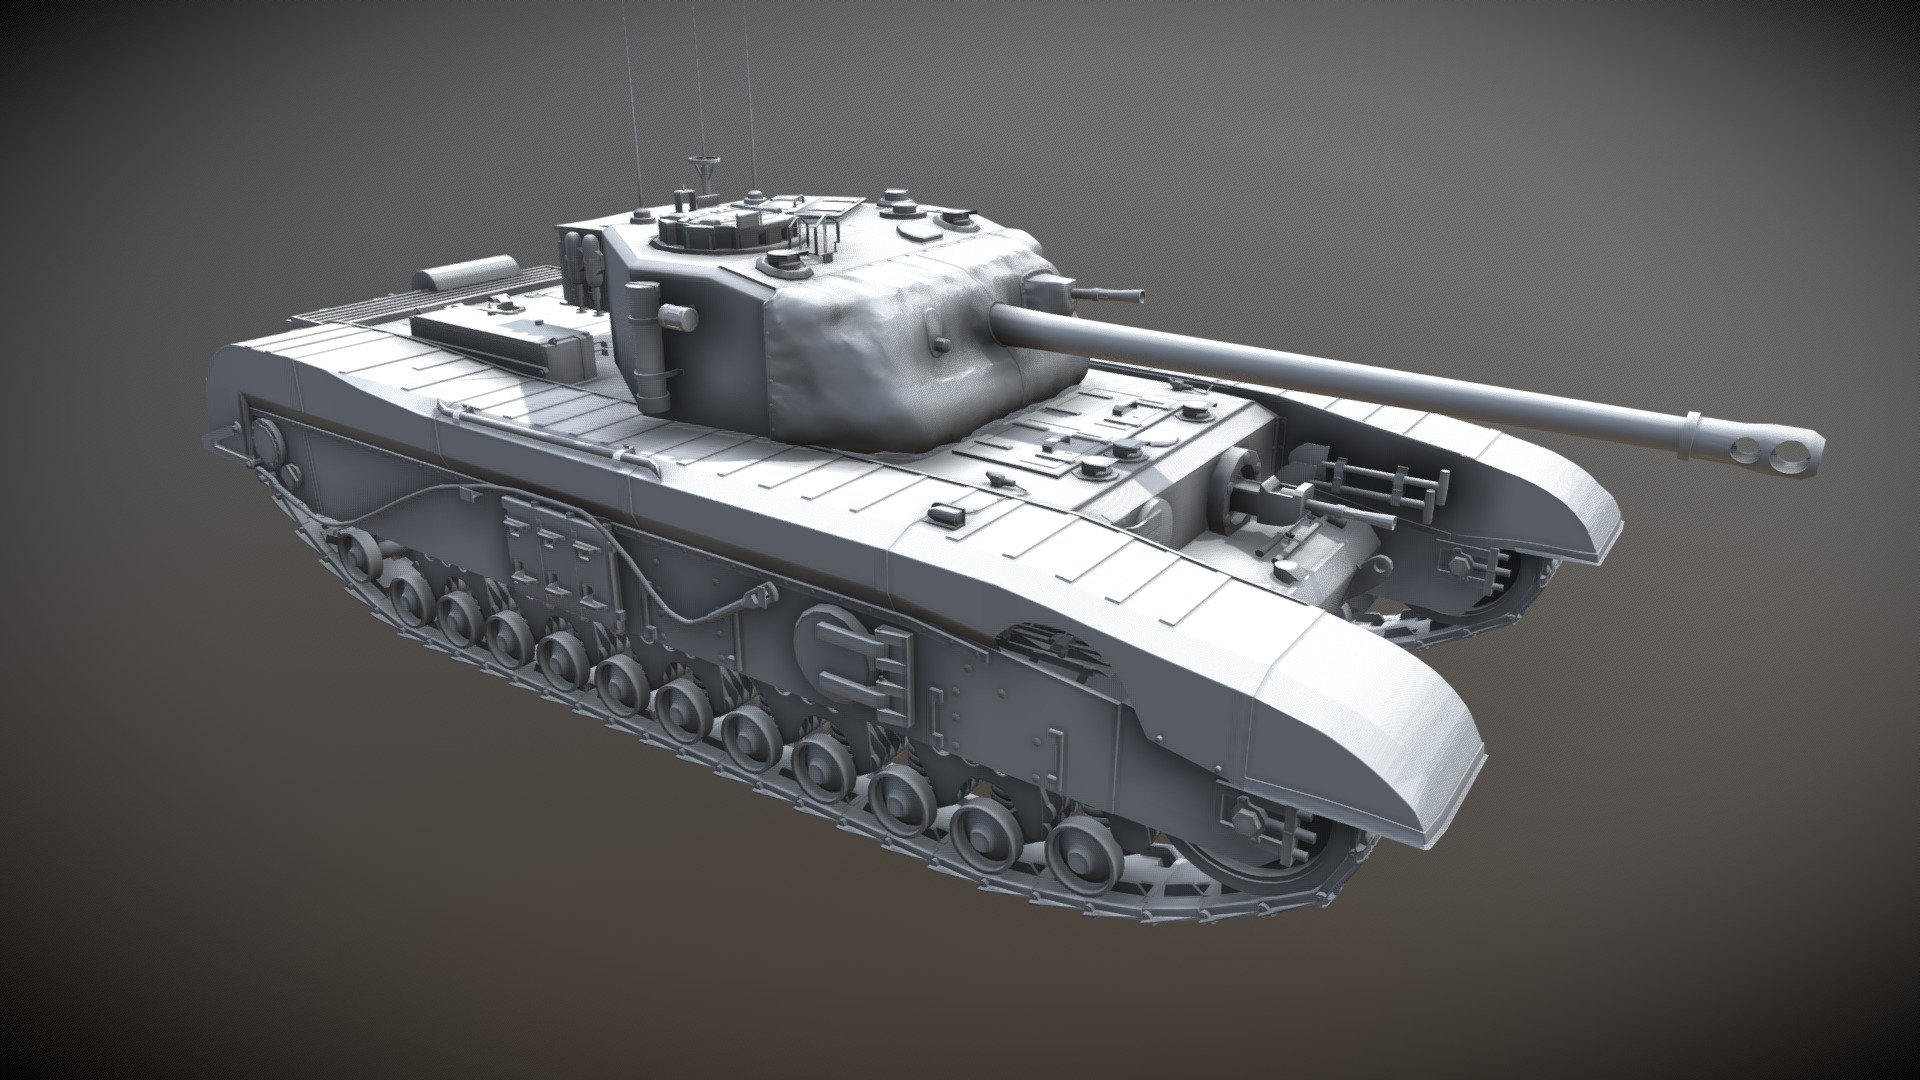 Blueprints > Tanks > Tanks A > A43 Black Prince